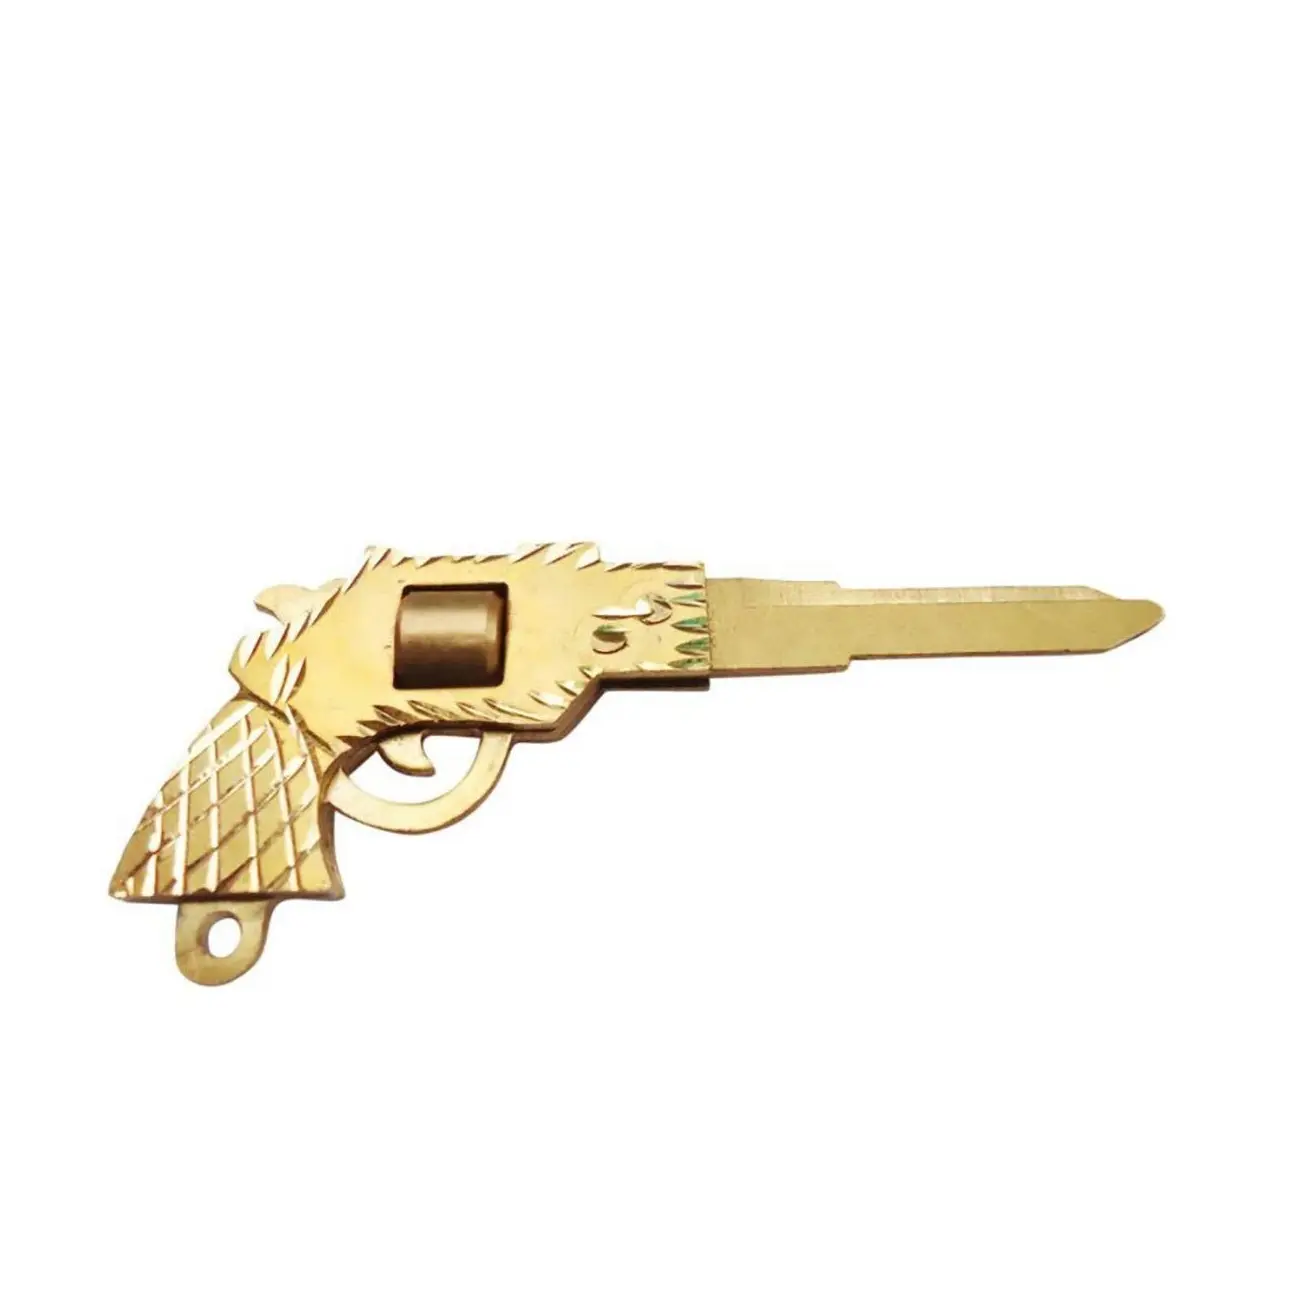 Goldene Schlüssel ringe Ketten waffen Waffen Metall Messing Mini Schlüssel ringe für Autos chl üssel Hauss chl üssel im Großhandel Reis